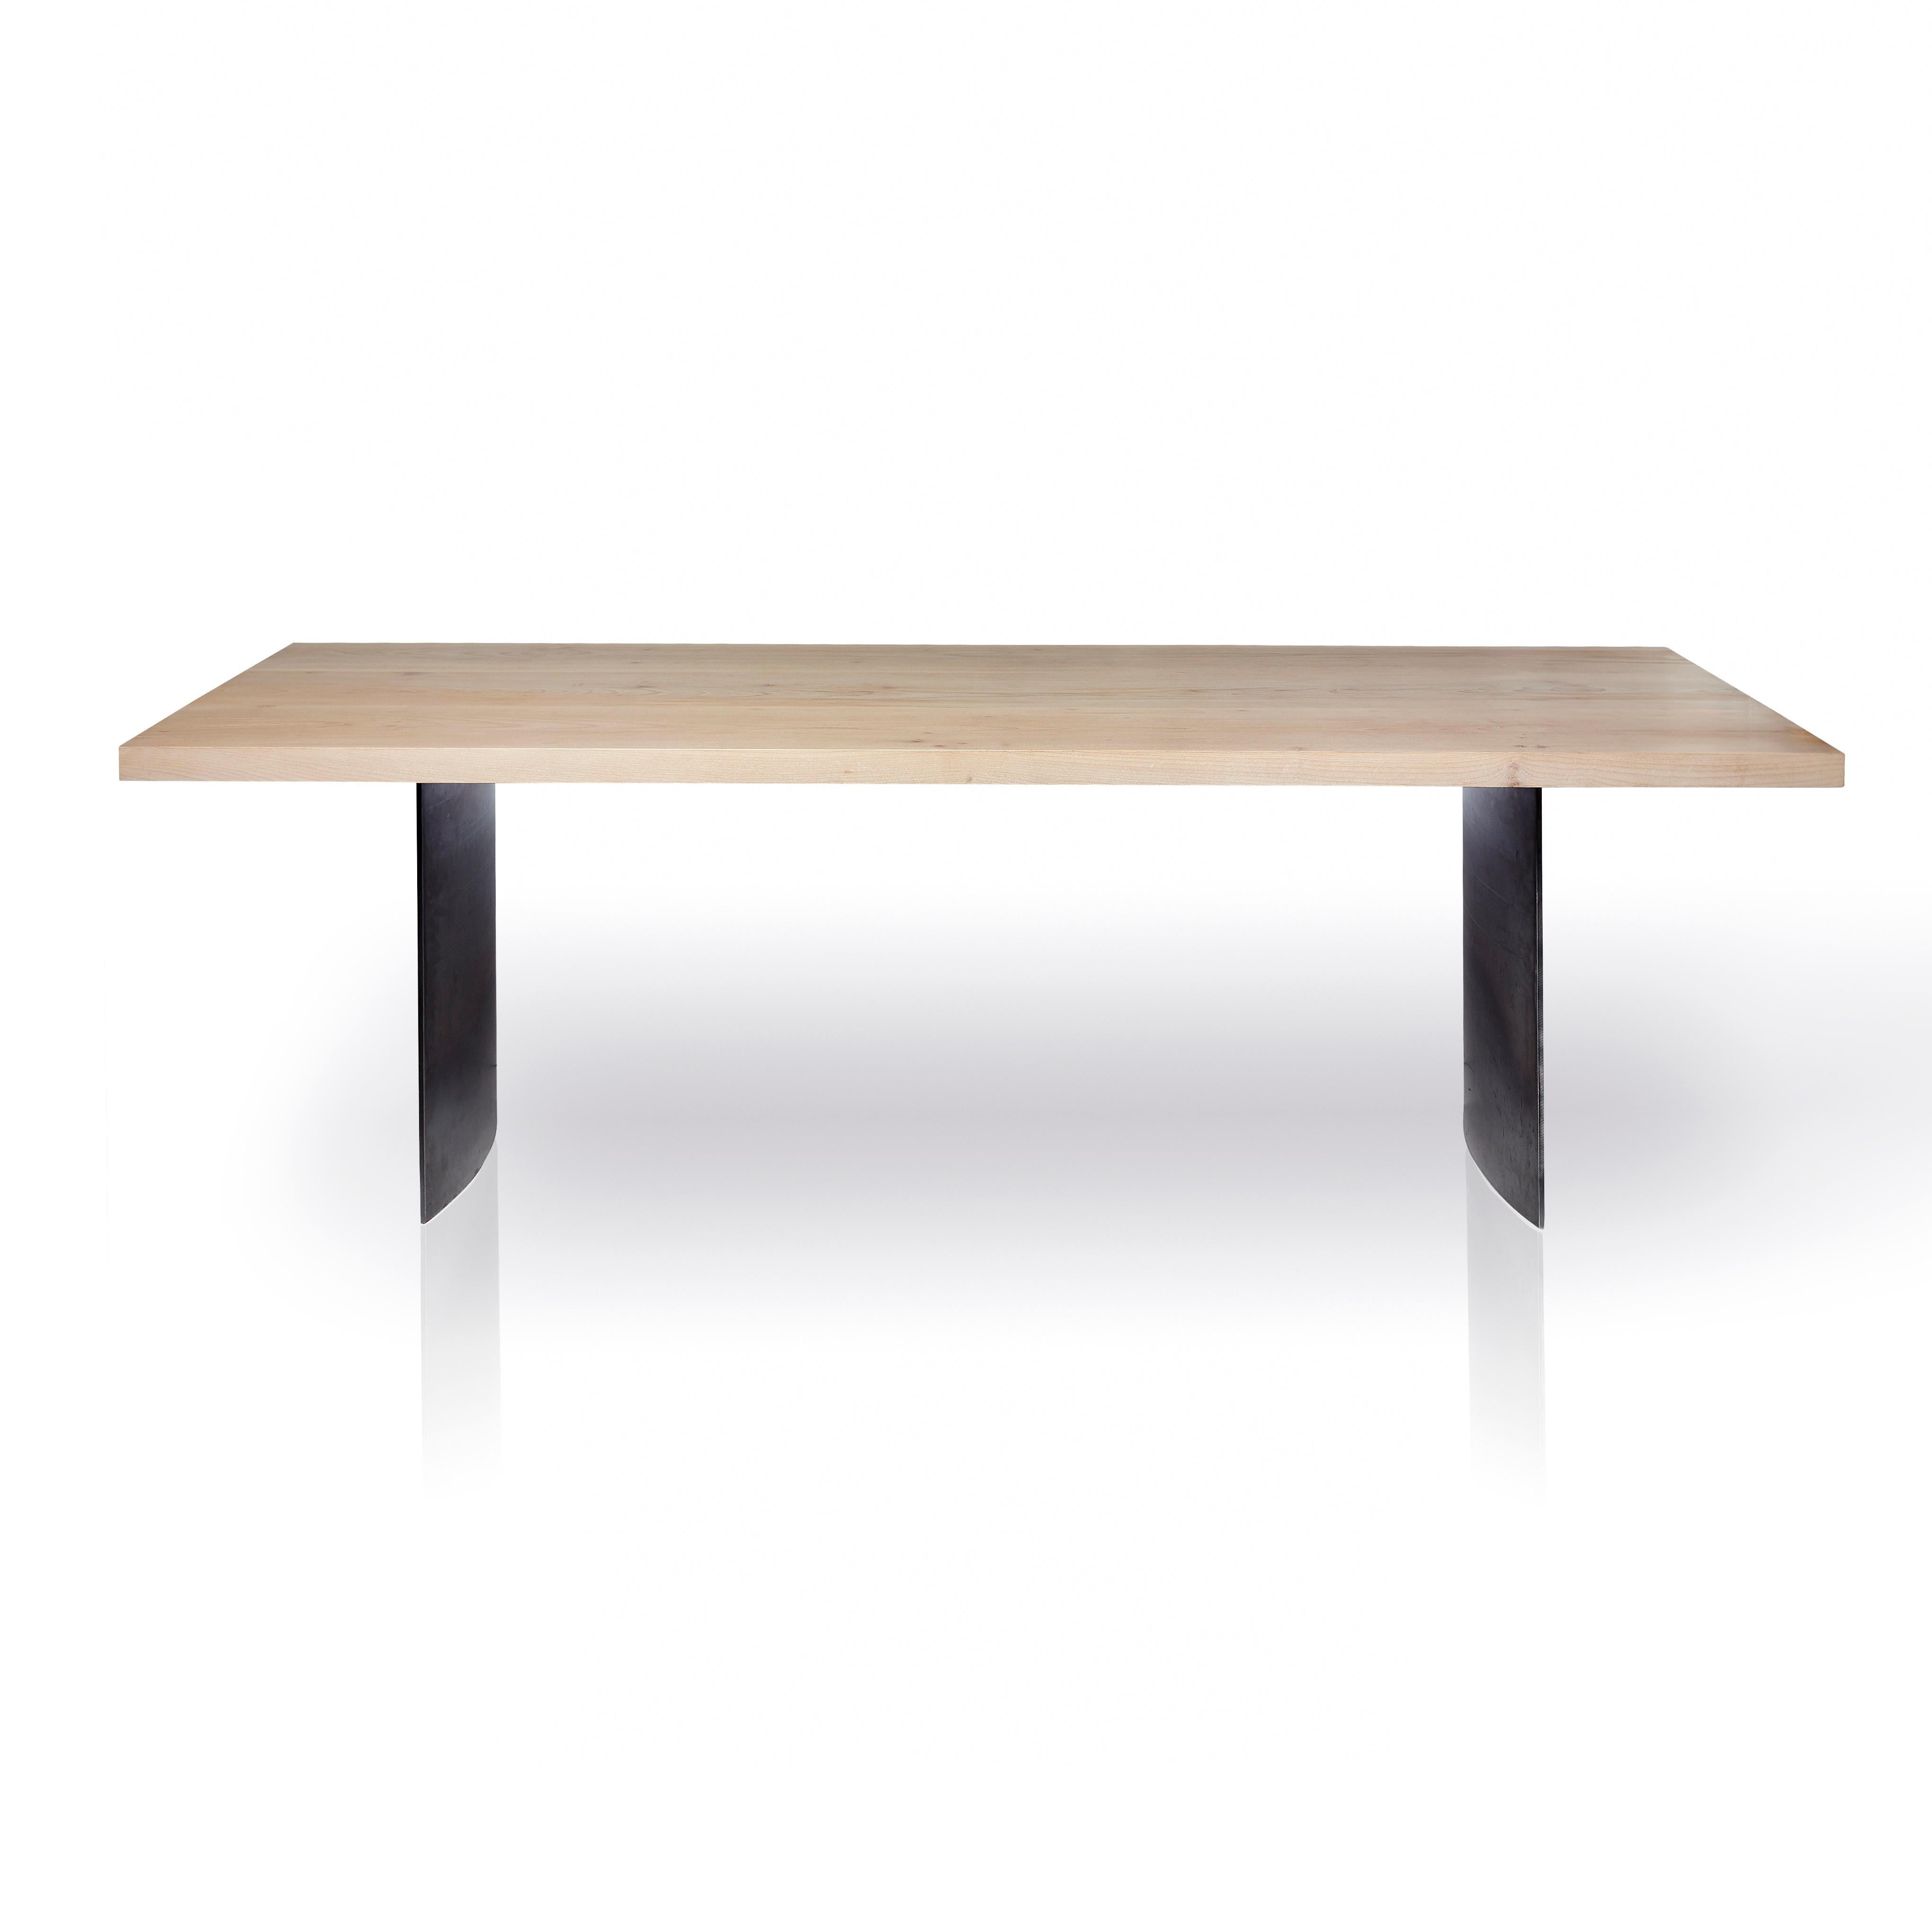 Der Tisch Ban besteht aus weiß gekalktem Ahornholz, das vom skandinavischen Design beeinflusst ist, und steht auf gebogenen 3/8